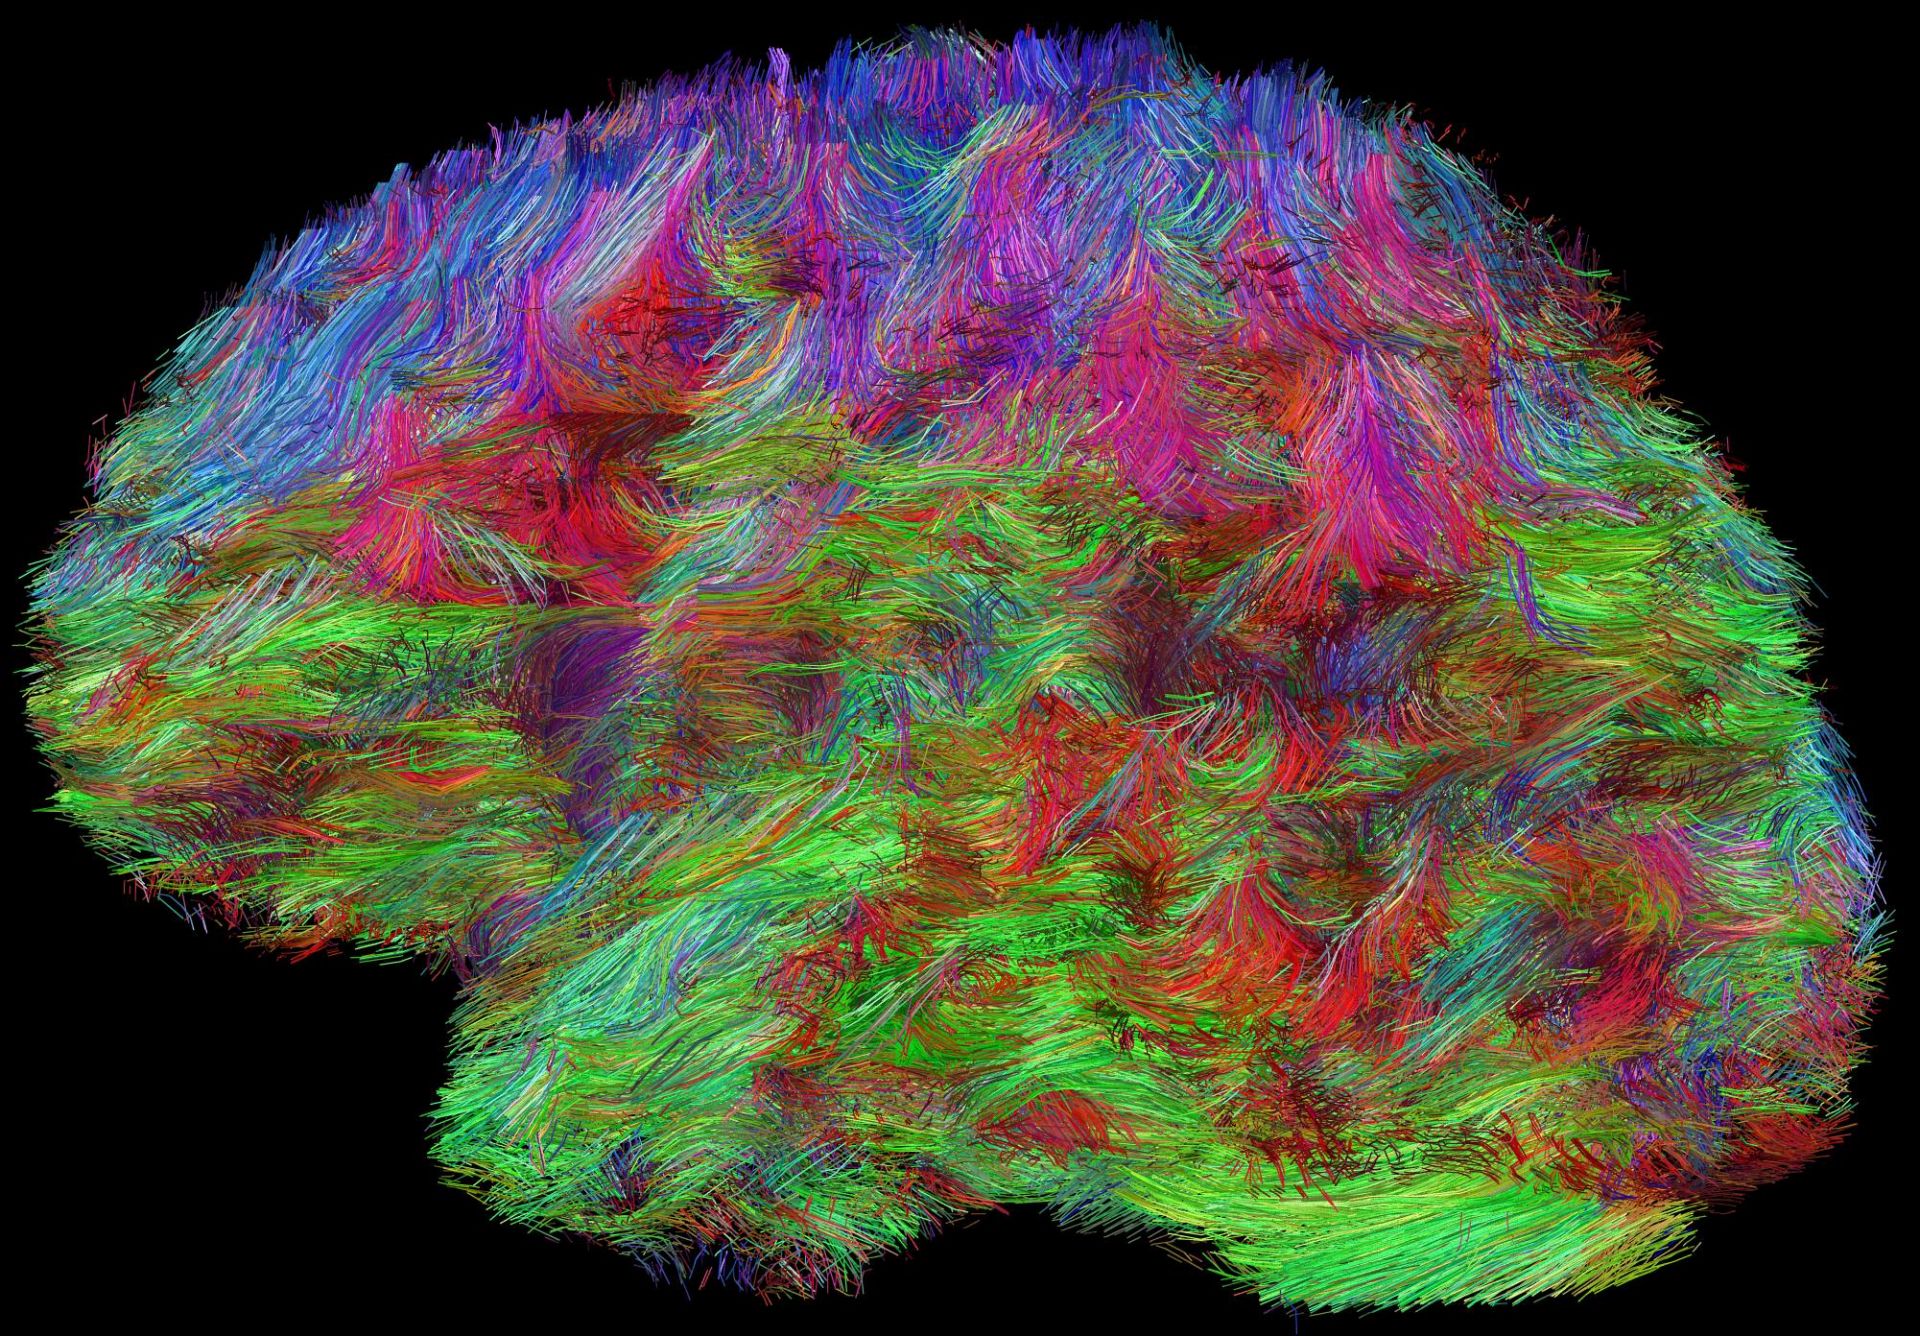 Rekonstrukcja połączeń anatomicznych w ludzkim mózgu, uzyskana za pomocą metody obrazowania dyfuzji molekuł wody w rezonansie magnetycznym